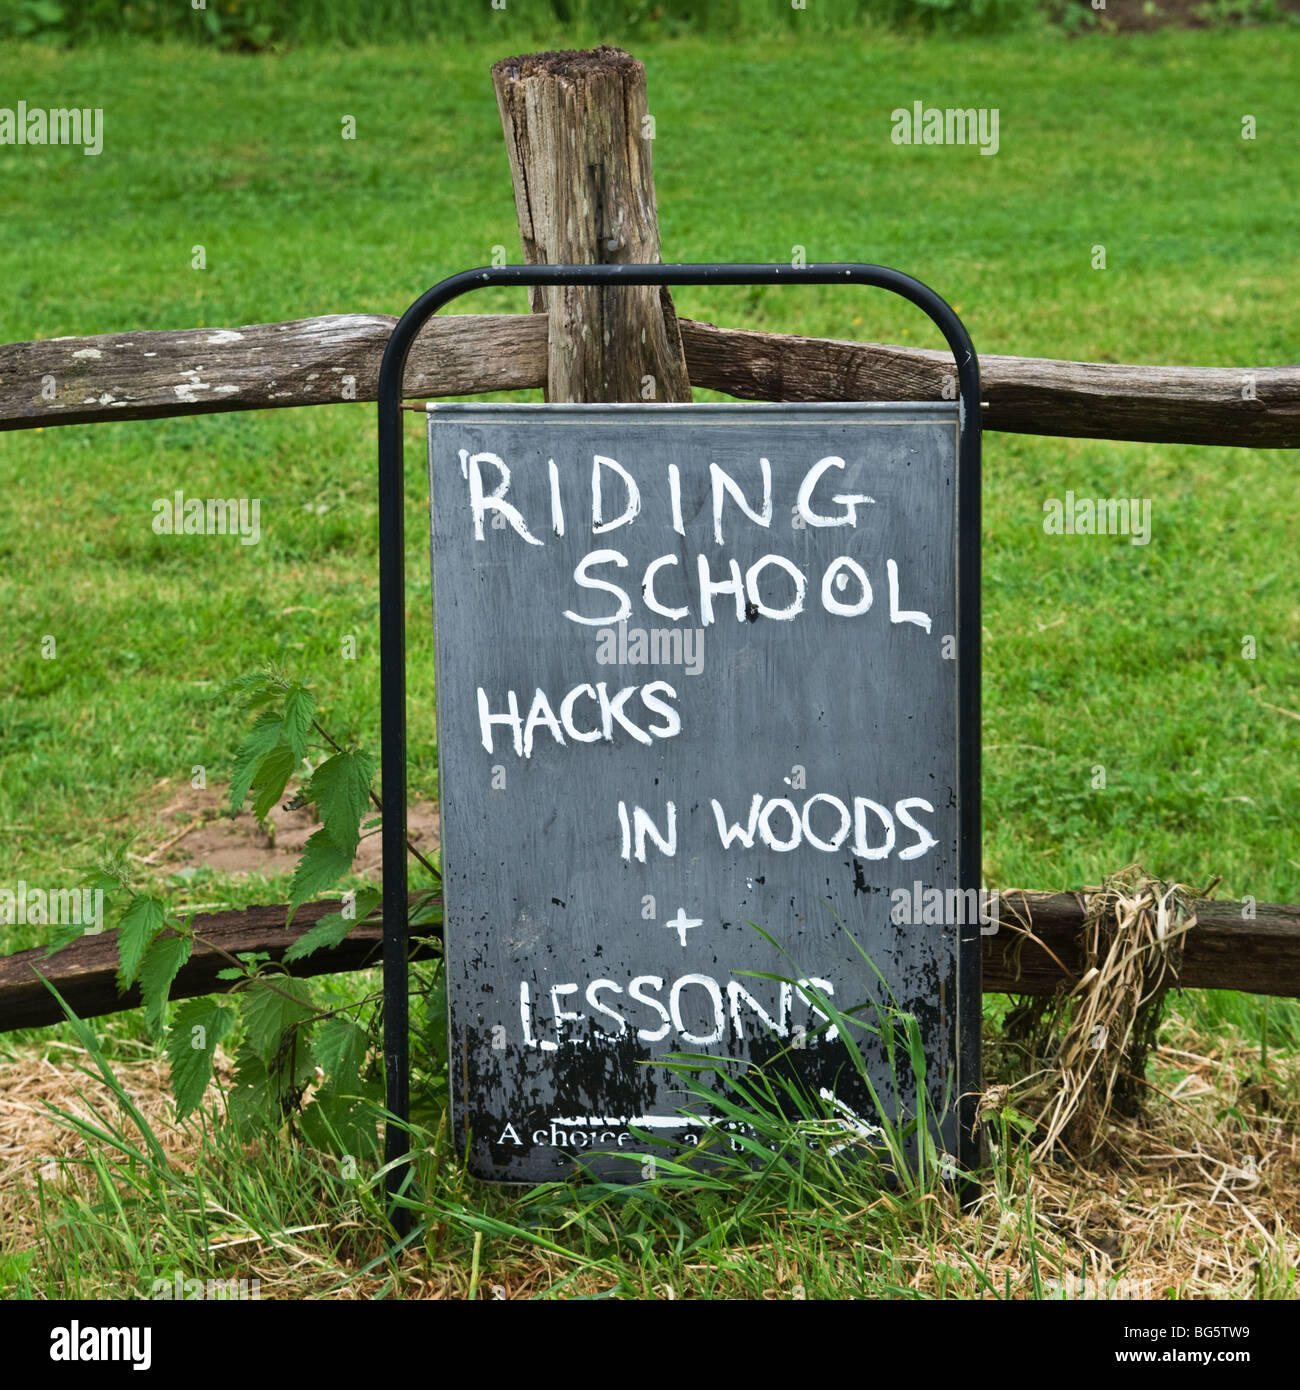 Al di fuori di lavagna con scuola di equitazione, hack in boschi plus lezioni segno Foto Stock